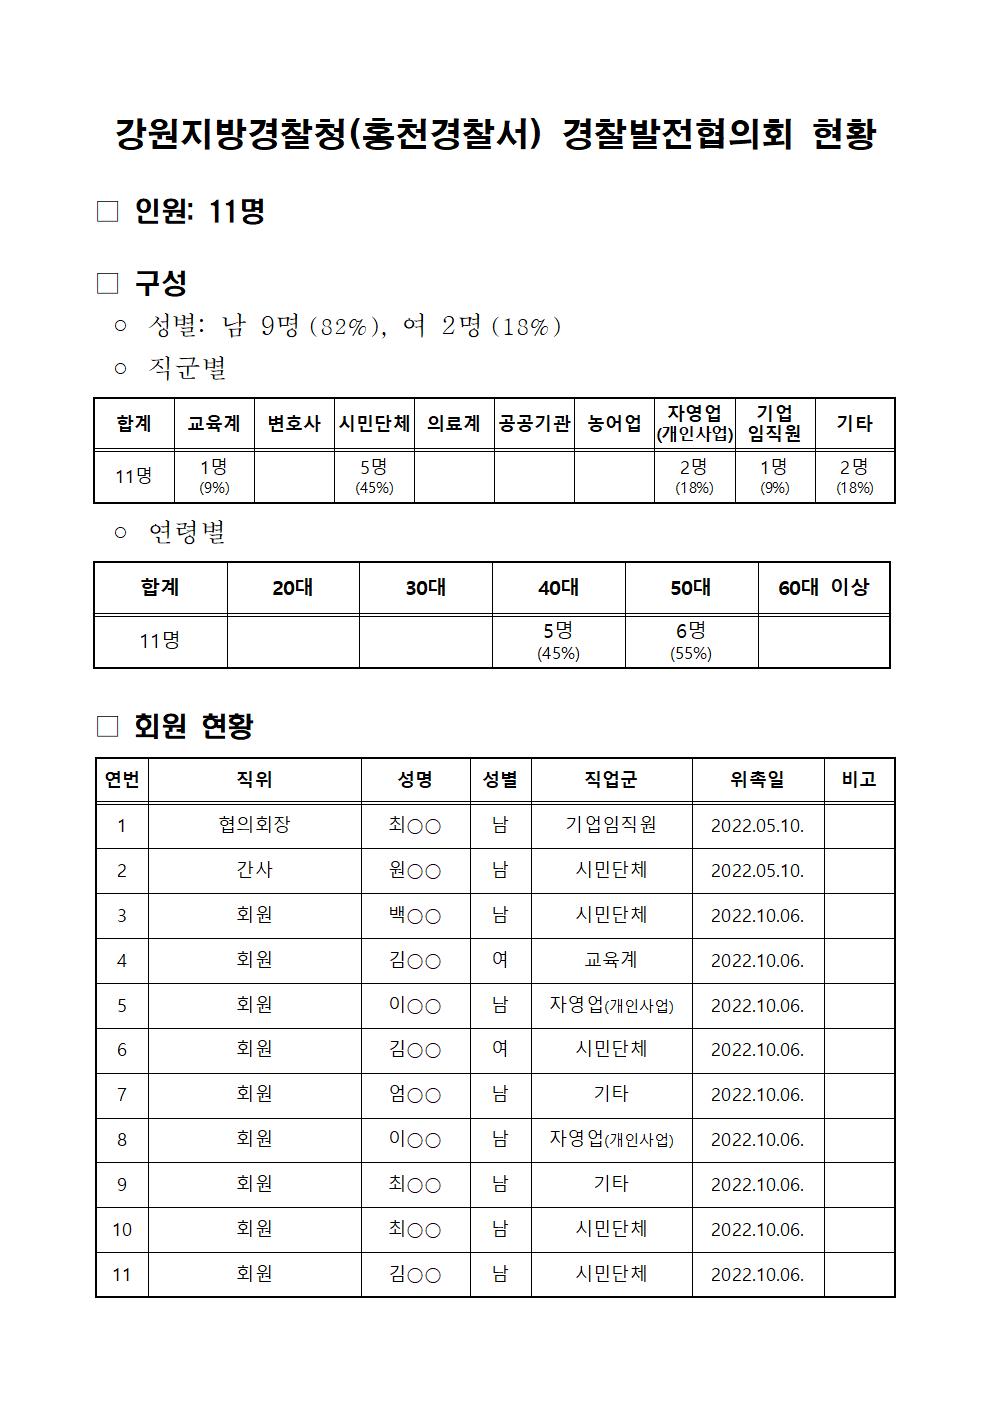 홍천경찰서 경찰발전협의회 현황-경발협구성현황(23년10월)001